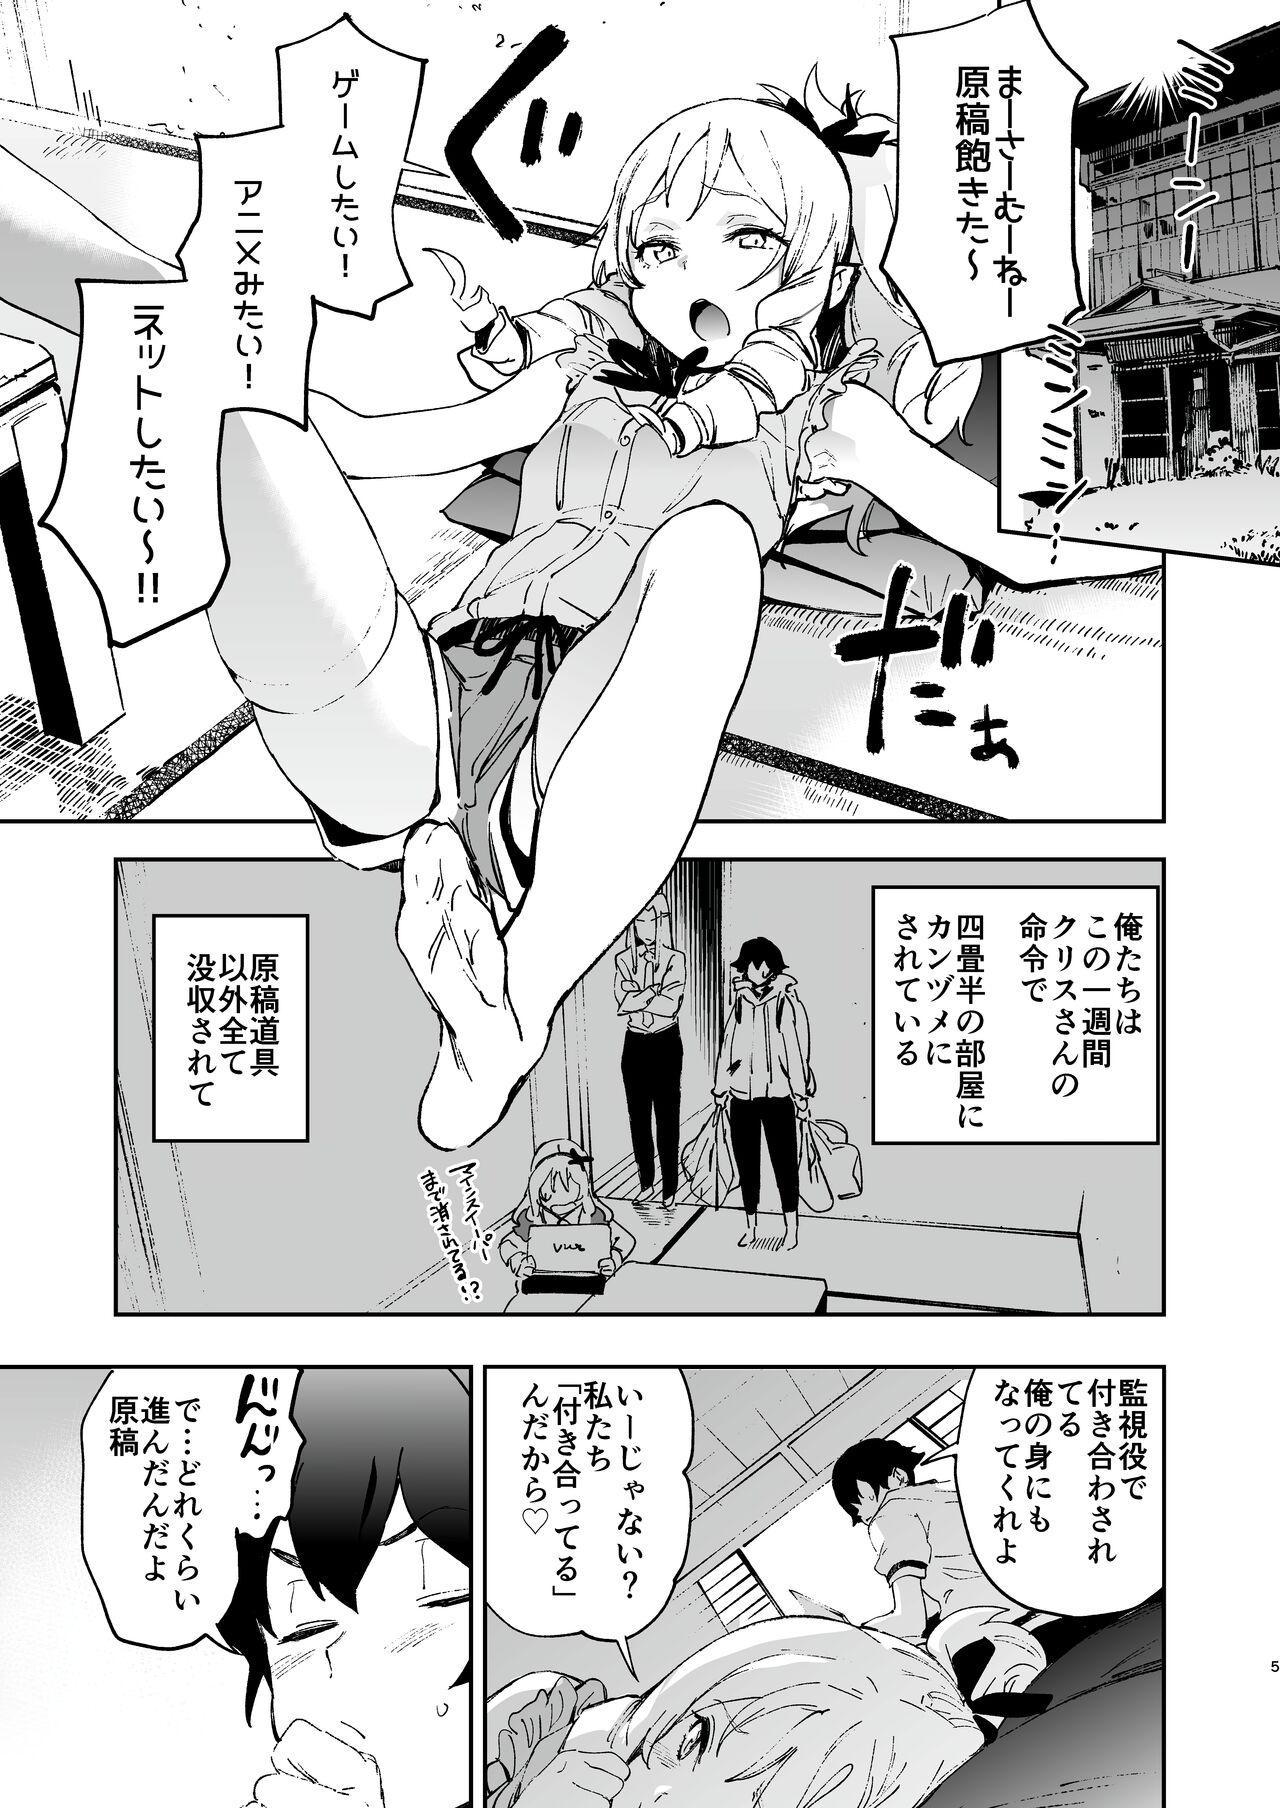 Boob Yamada Elf-sensei no Yaruki SEX Fire - Eromanga sensei Cruising - Page 4